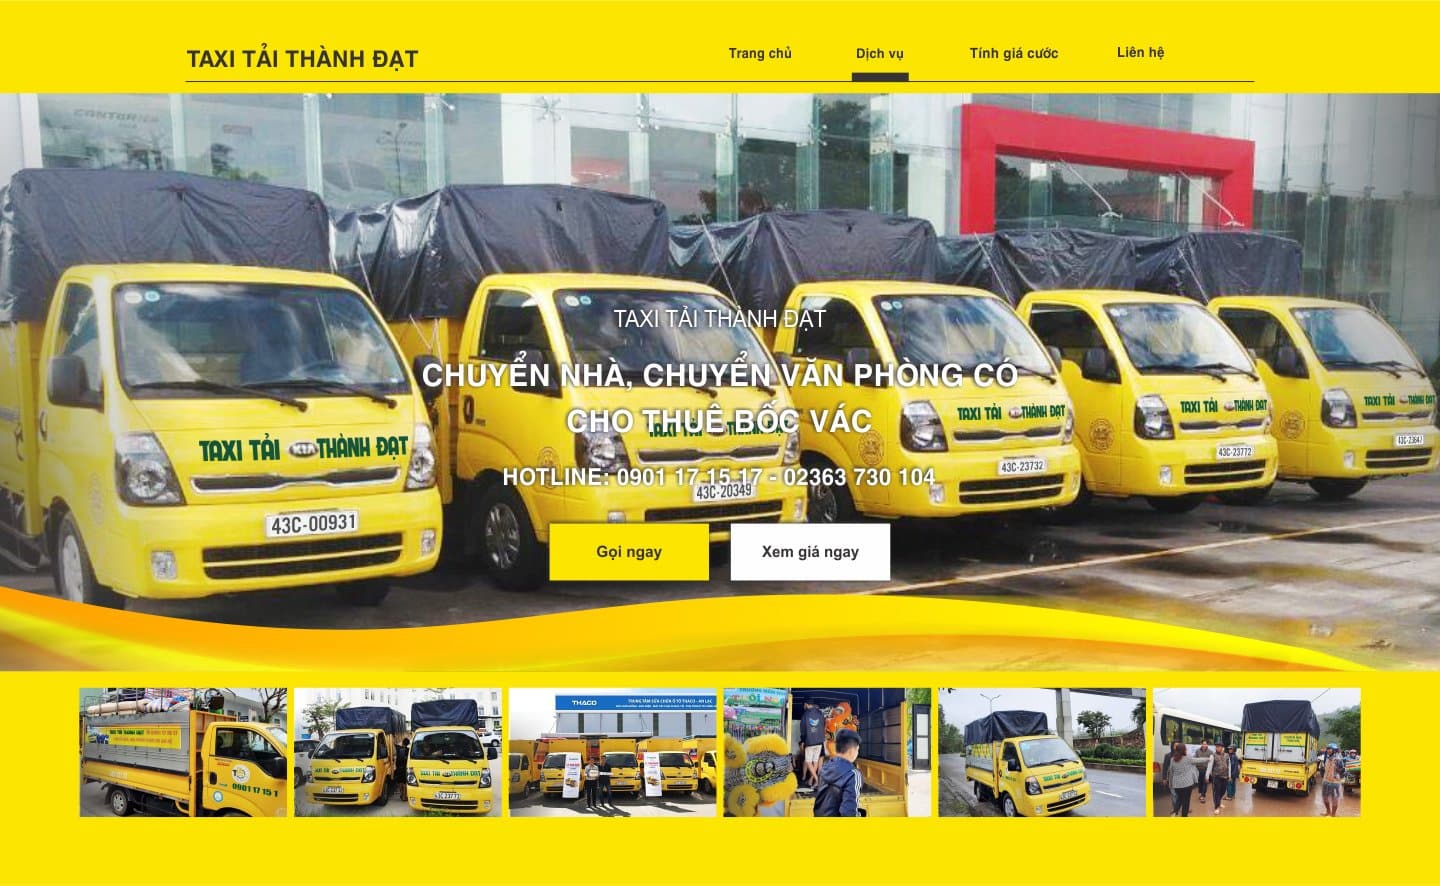 Dịch vụ chuyển văn phòng tại Đà Nẵng - Taxi Tải Thành Đạt | Nguồn: Công ty Taxi Tải Thành Đạt